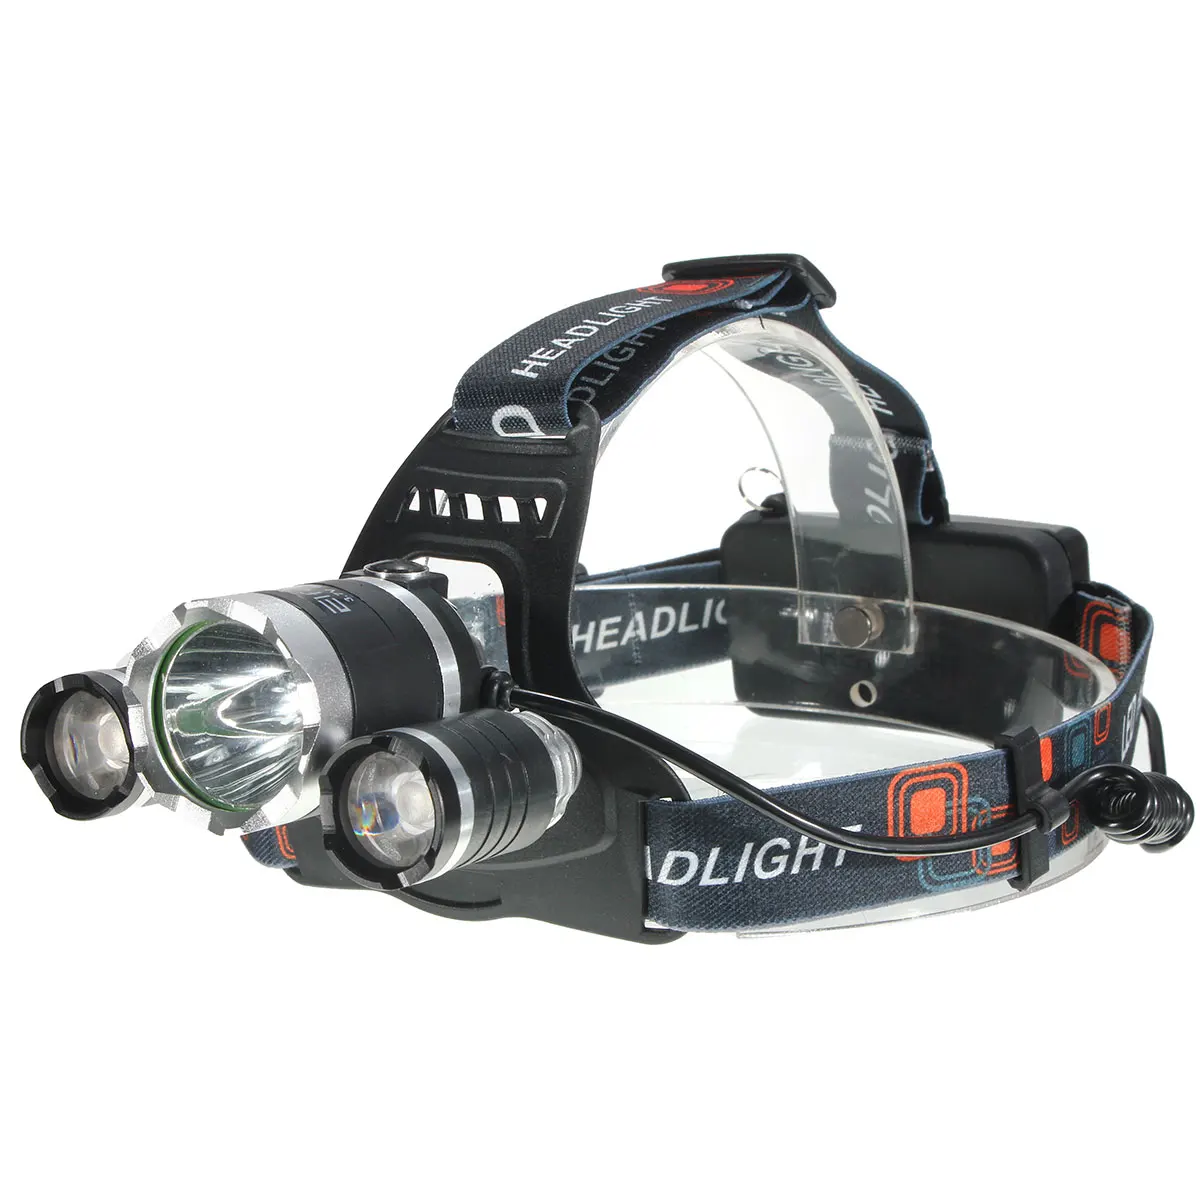 Jiguoor XM-L T6 светодиодный 5000LM Перезаряжаемые головной светильник фонарь для кемпинга, охоты, рыбалки налобный фонарь светильник по 18650 Батарея